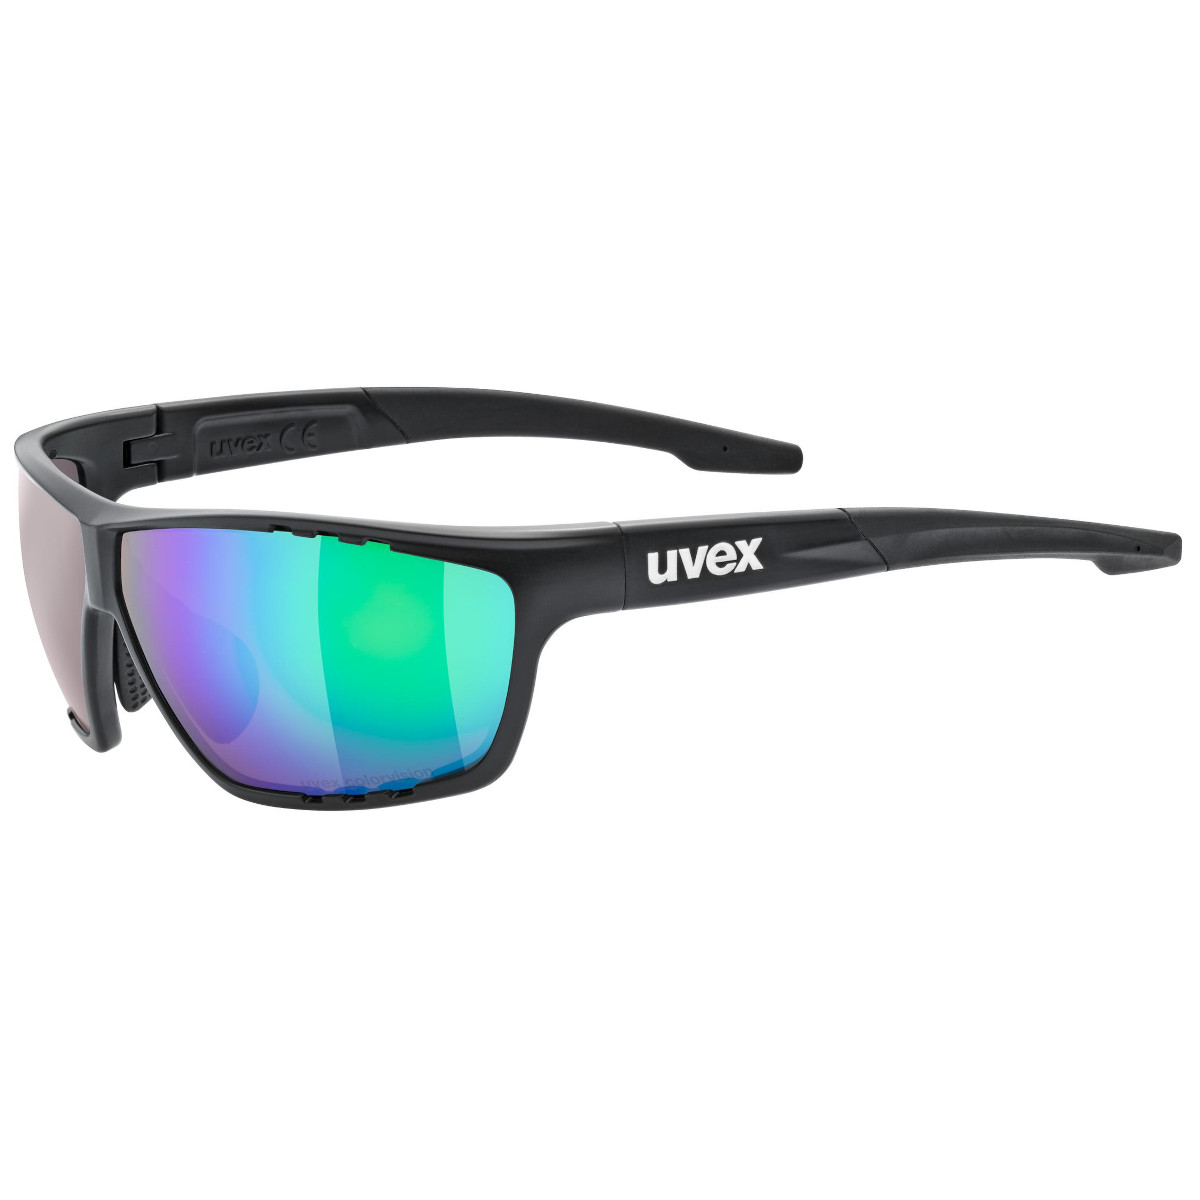 Produktbild von Uvex sportstyle 706 CV Brille - black matt/mirror green colorvision